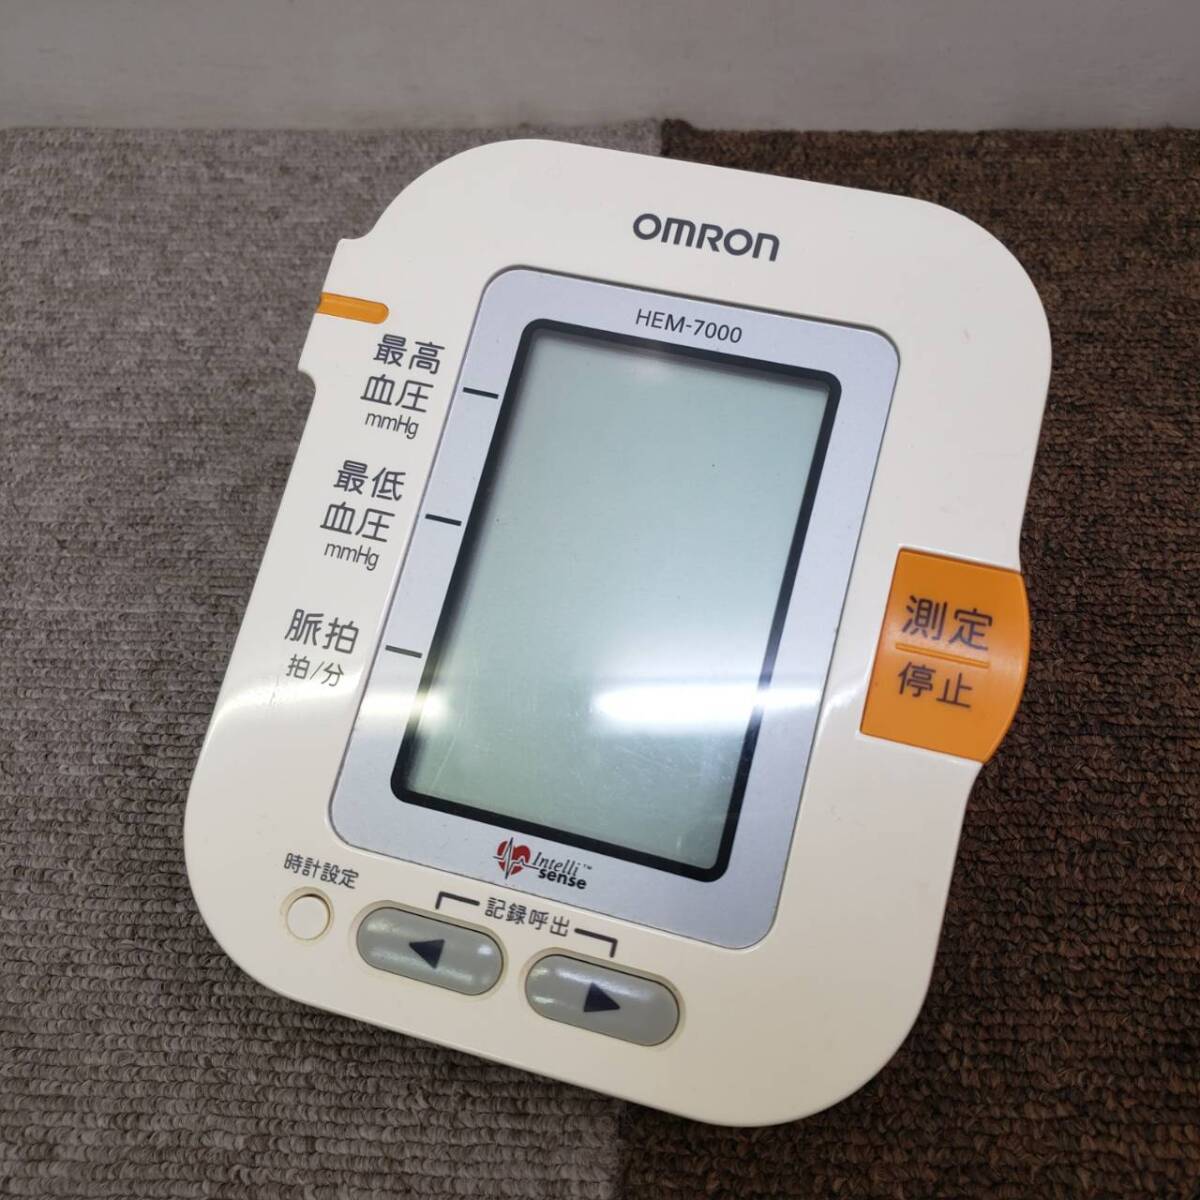 【動作確認済み】 送料格安 OMRON オムロン デジタル自動血圧計 HEM-7000 SN.20070502497LF_画像2